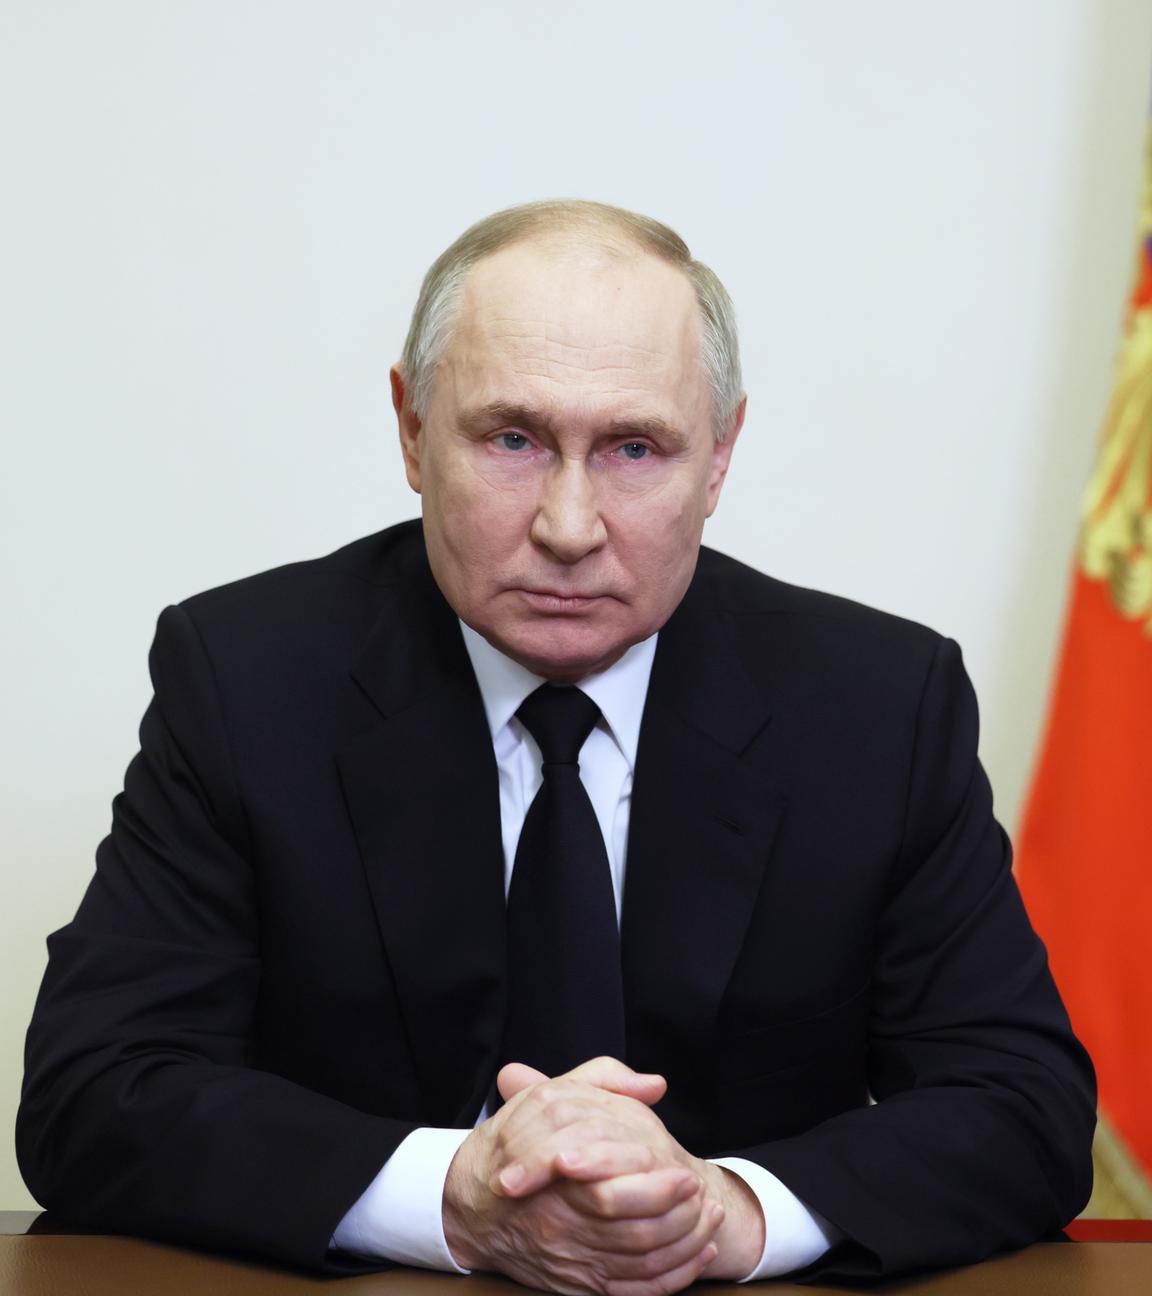 Das Bild zeigt den russischen Präsidenten Wladimir Putin.